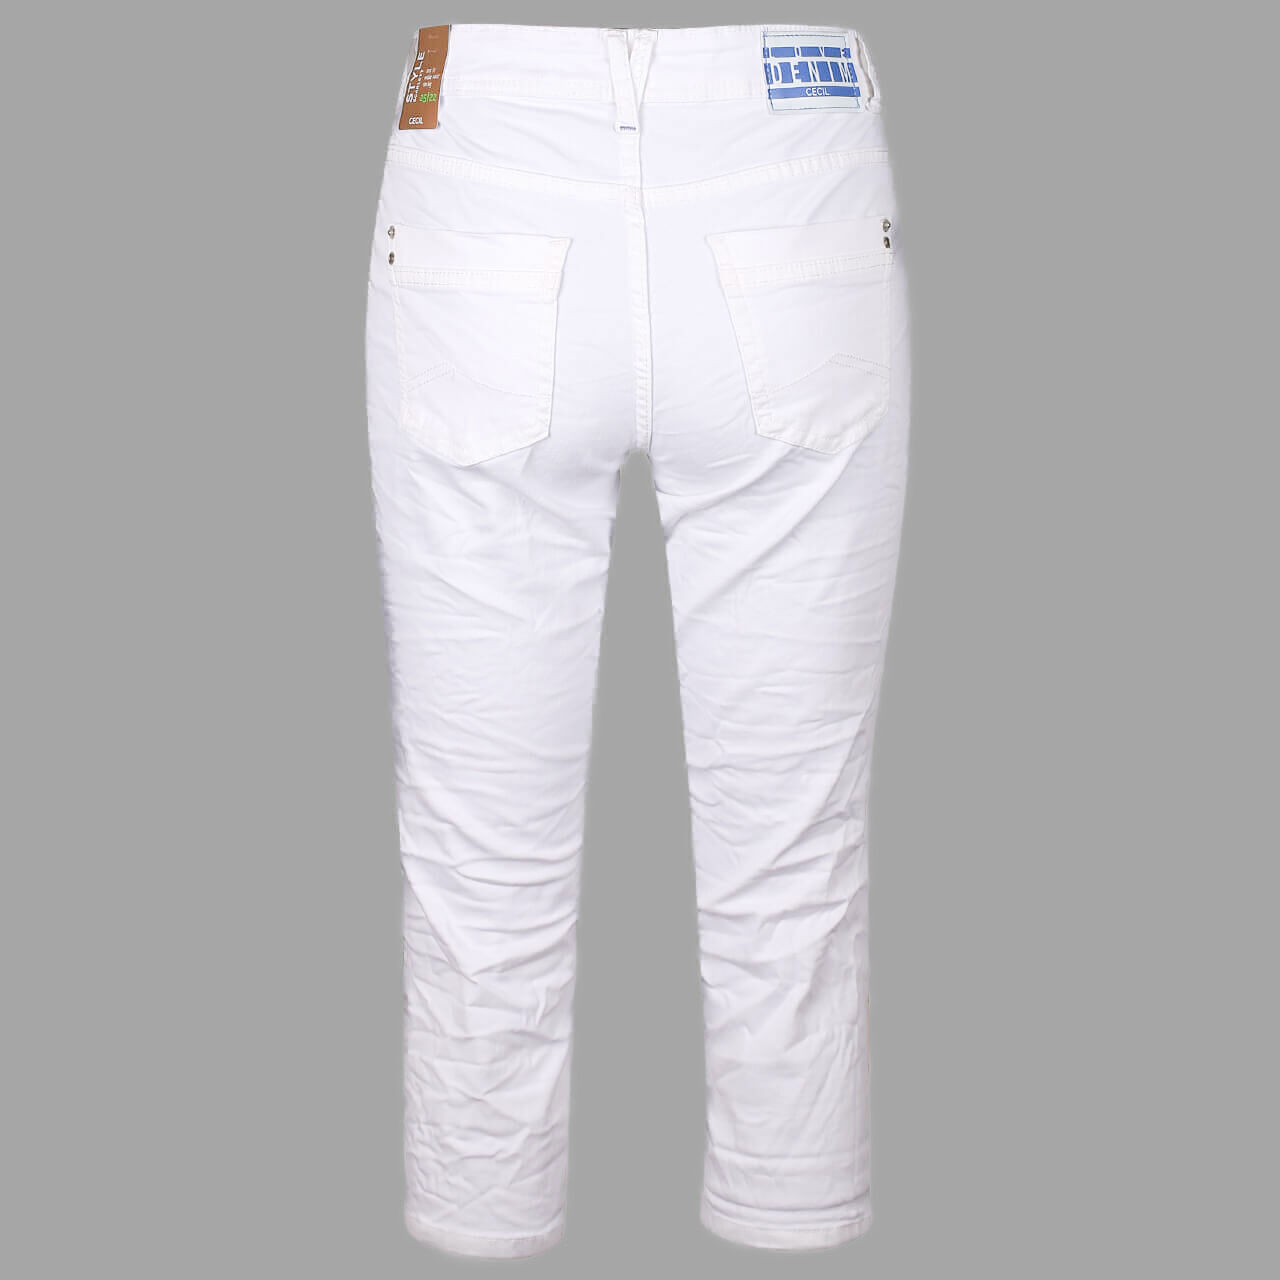 Cecil Scarlett 3/4 Jeans für Damen in Weiß, FarbNr.: 10438